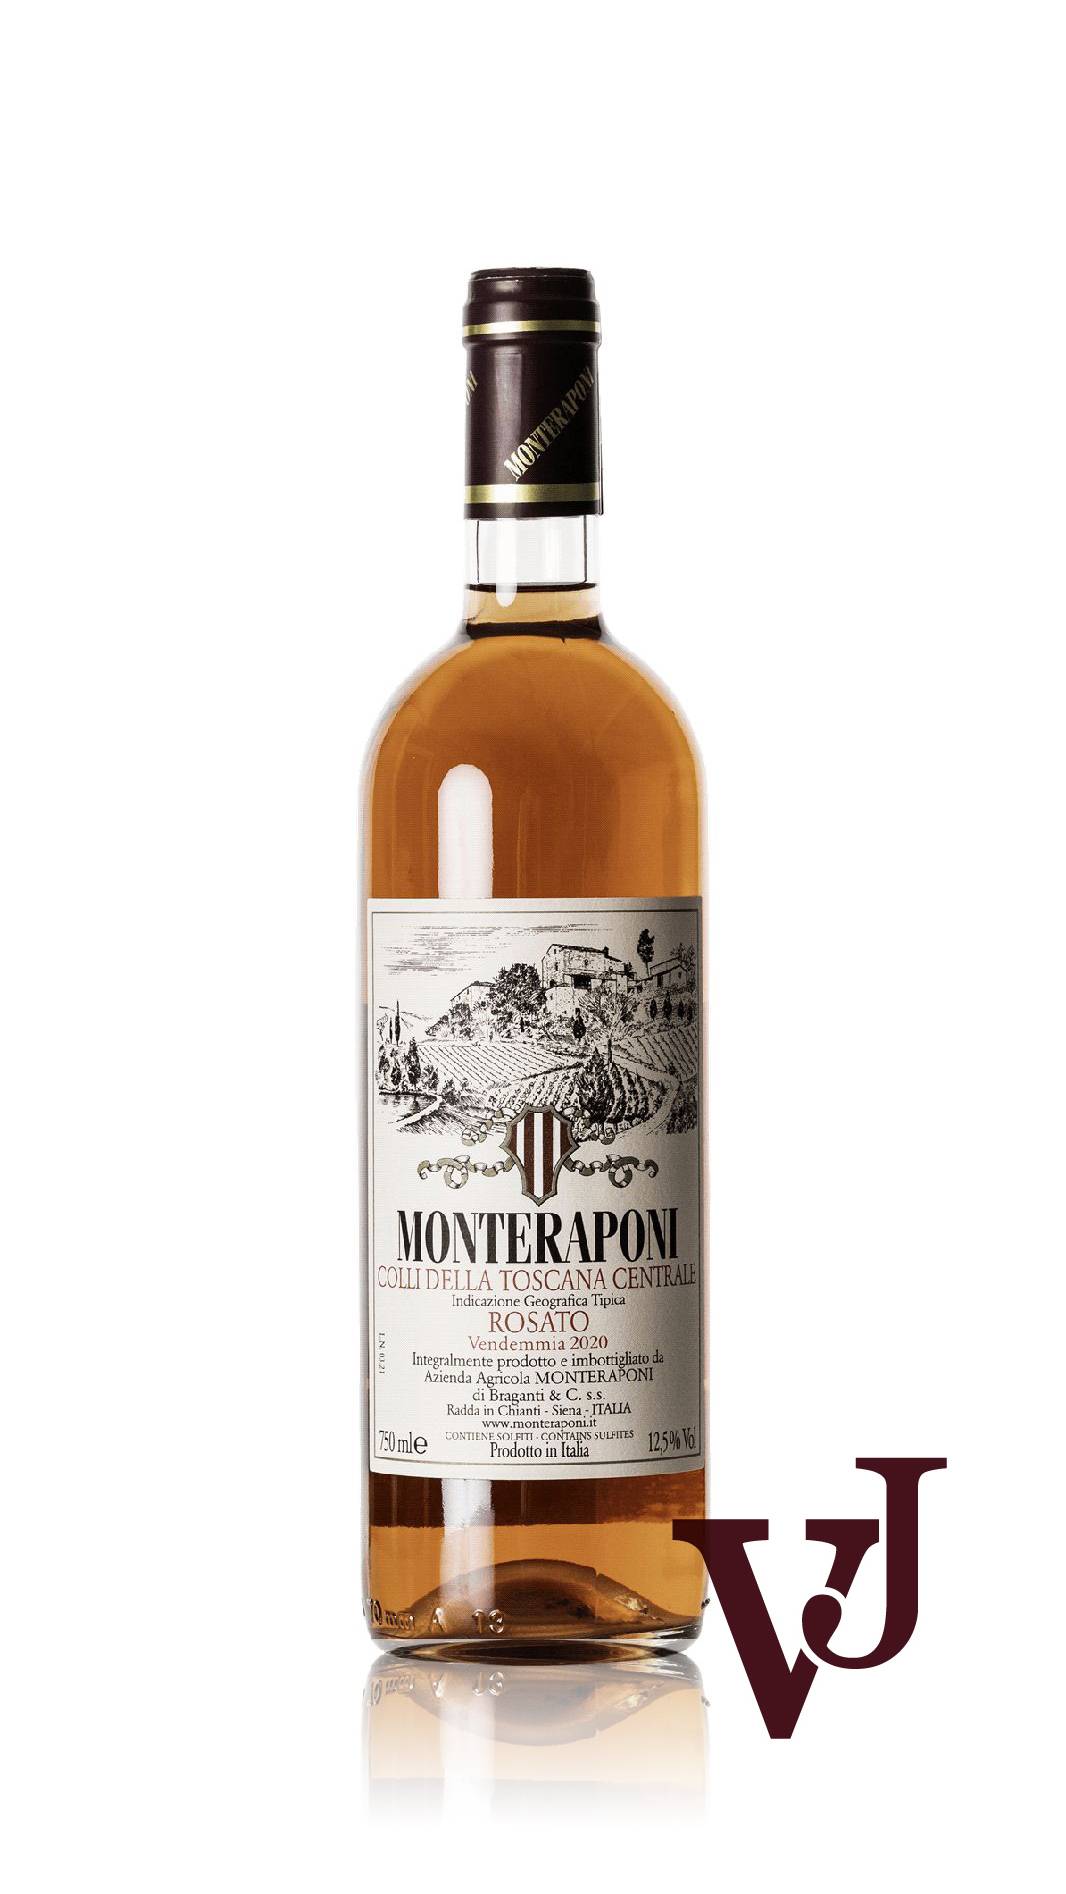 Rosé Vin - Monteraponi artikel nummer 5775501 från producenten Monteraponi från området Italien